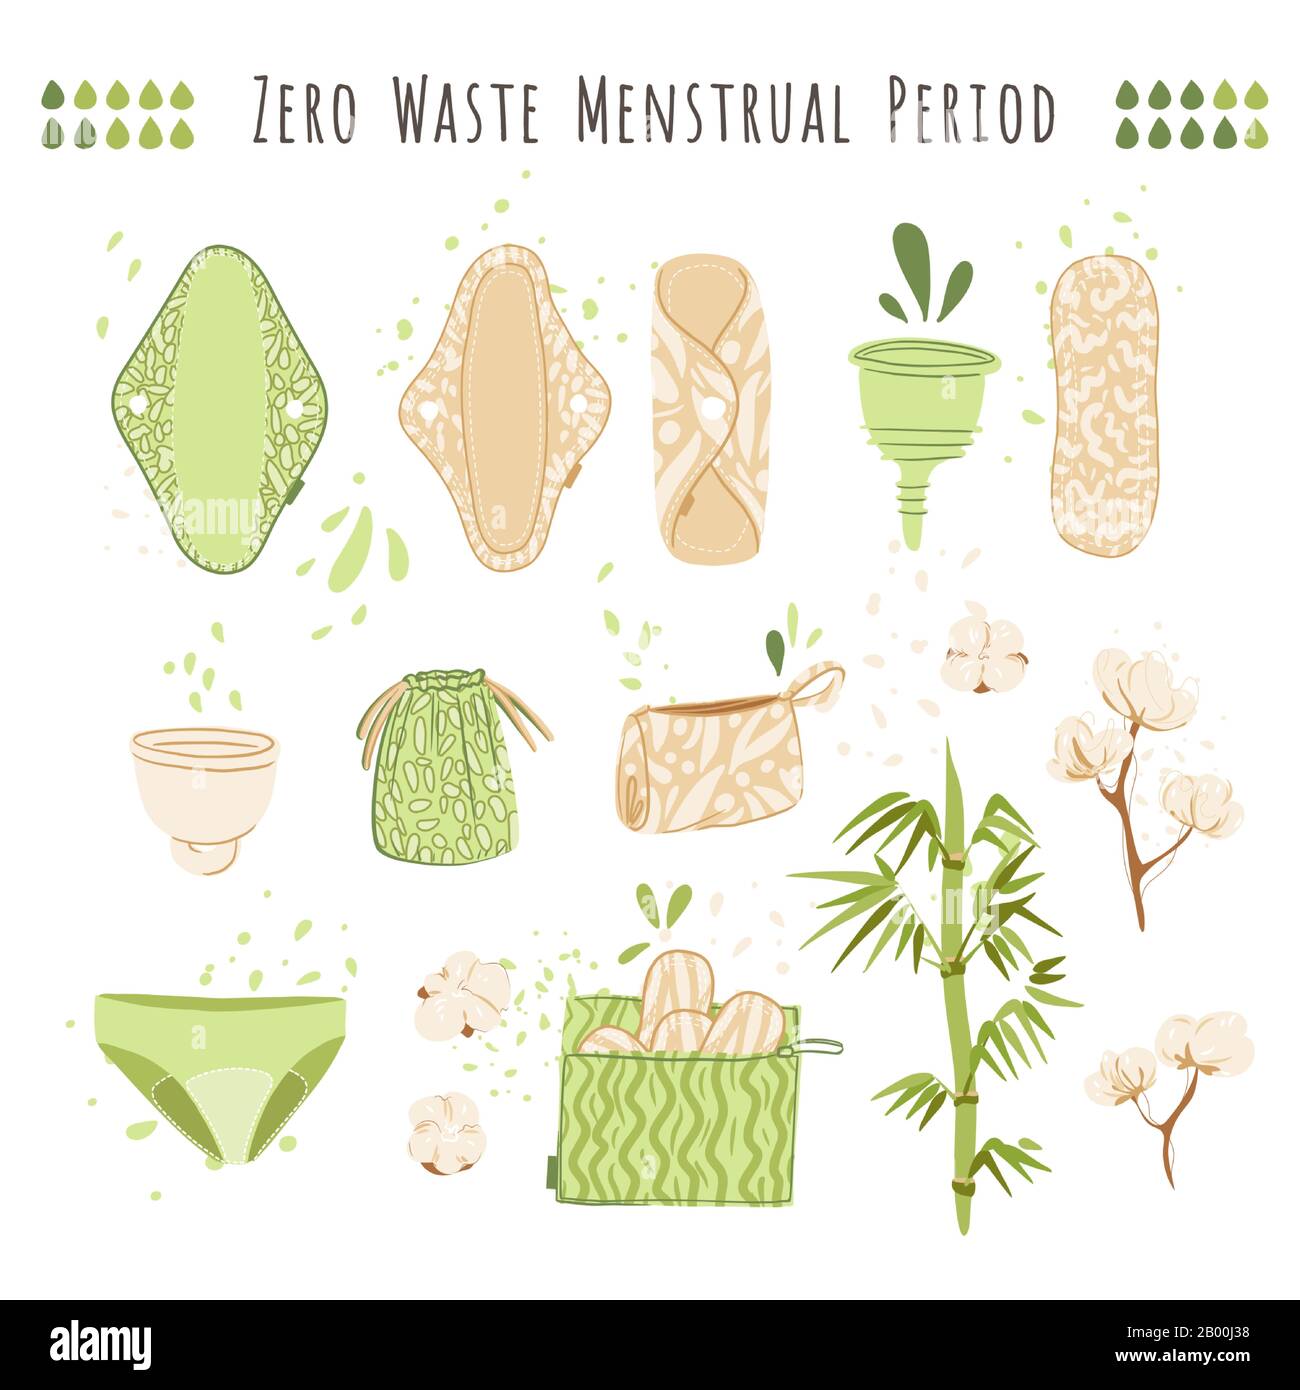 ZERO Waste femme menstruel période vecteur dessin animé plat avec des produits écologiques - les tampons menstruels réutilisables, Les Chiffons, la tasse, recycler des sacs de coton Illustration de Vecteur